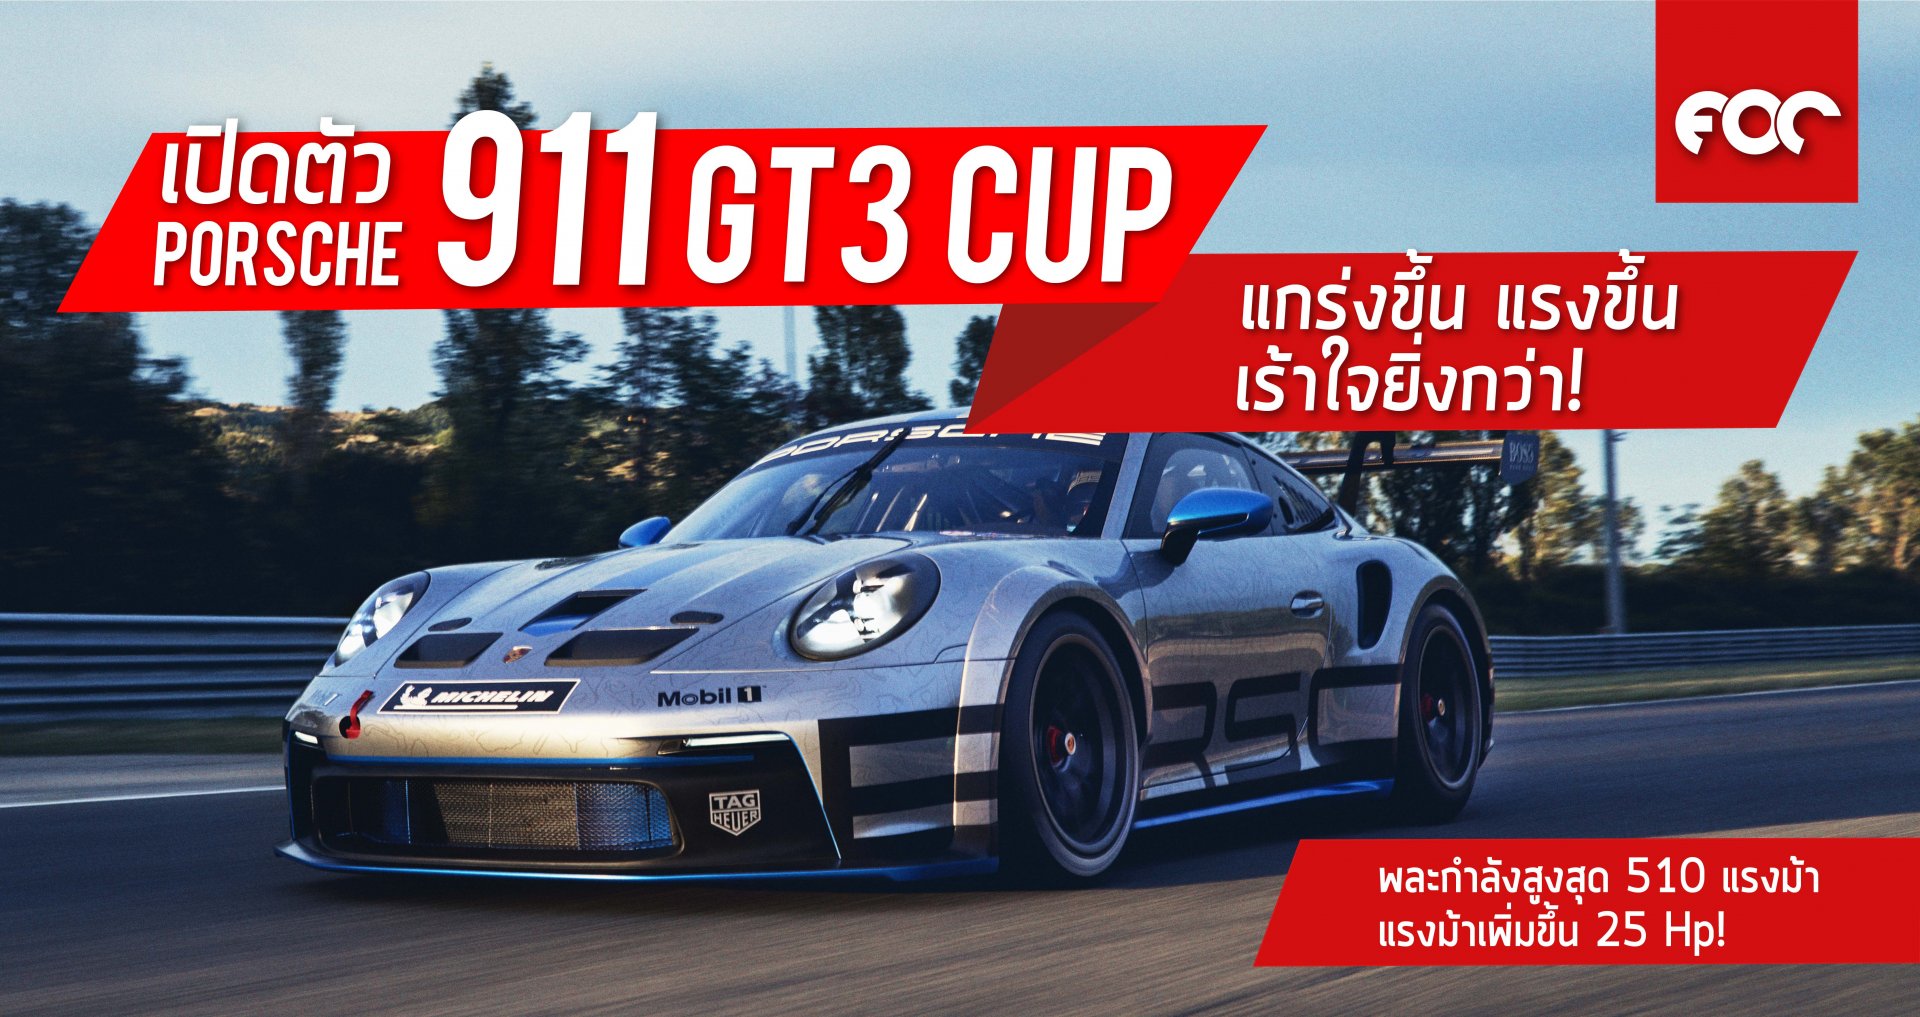 เปิดตัว ปอร์เช่ 911 GT3 Cup  รุ่นใหม่ แข็งแกร่งและแรงขึ้น เร้าใจกับพละกำลังสูงสุด 510 แรงม้า เพิ่มขึ้น 25 Hp!